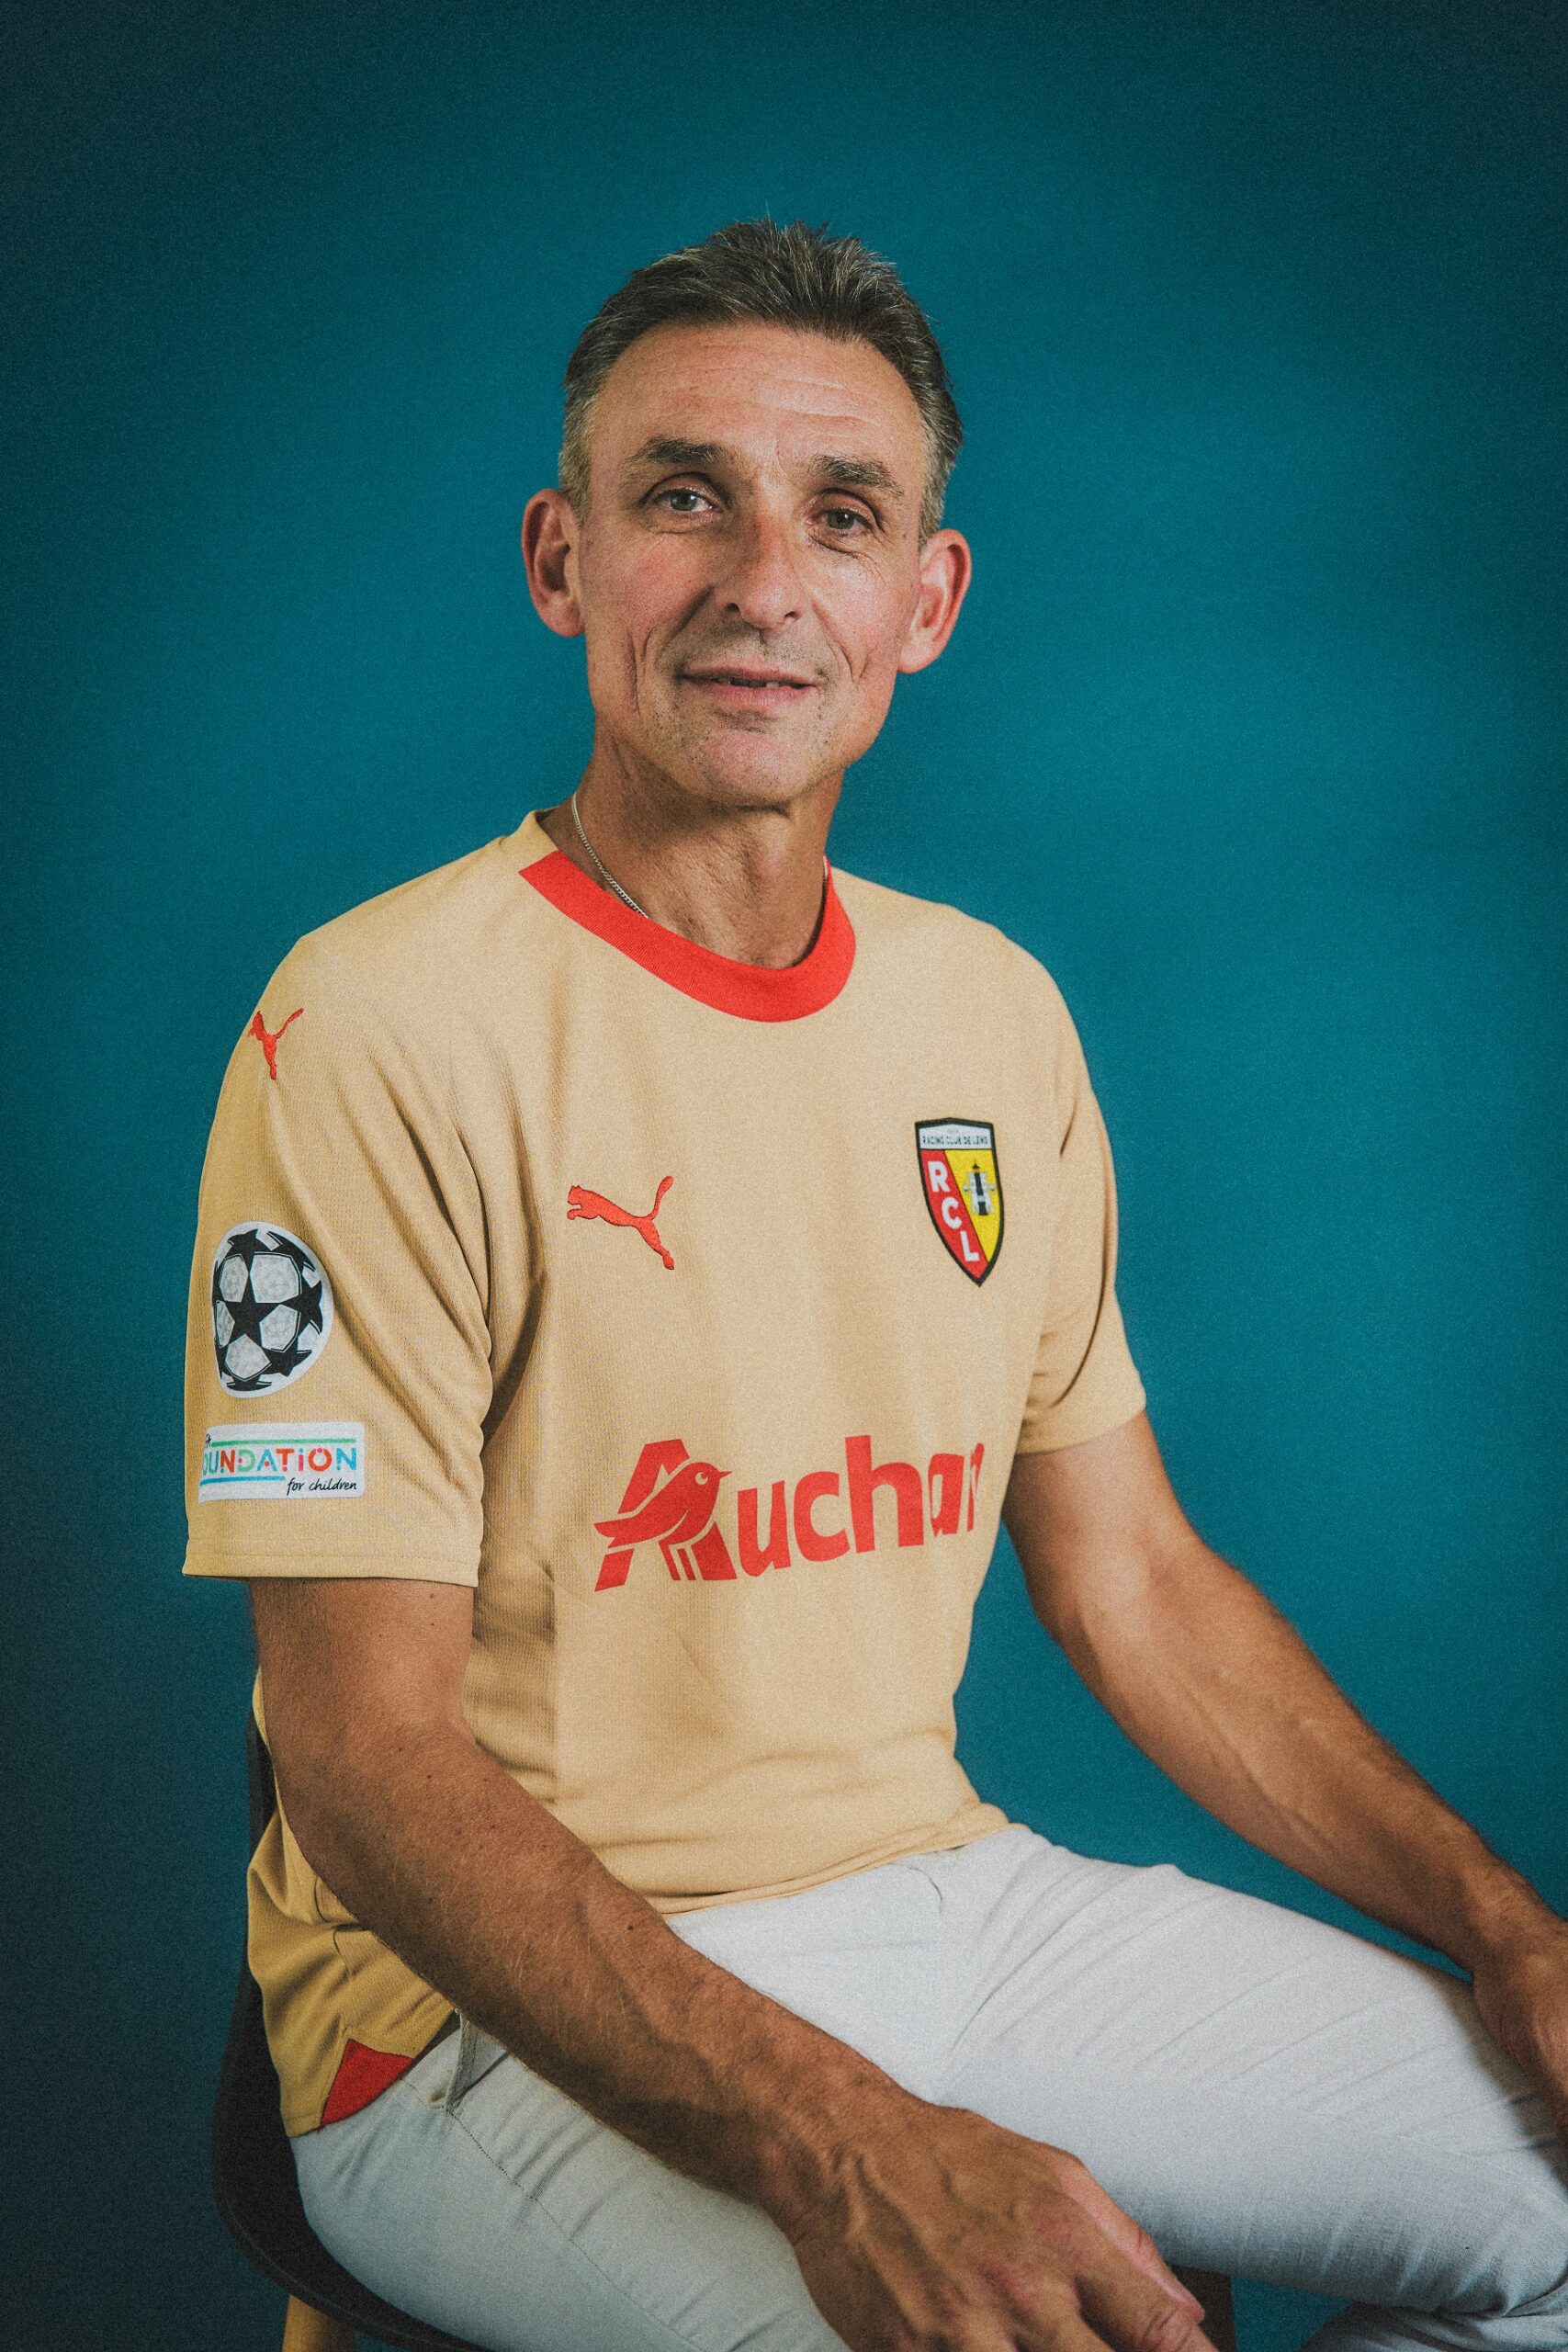 Le RC Lens dévoile son maillot doré spécifique pour l'UEFA